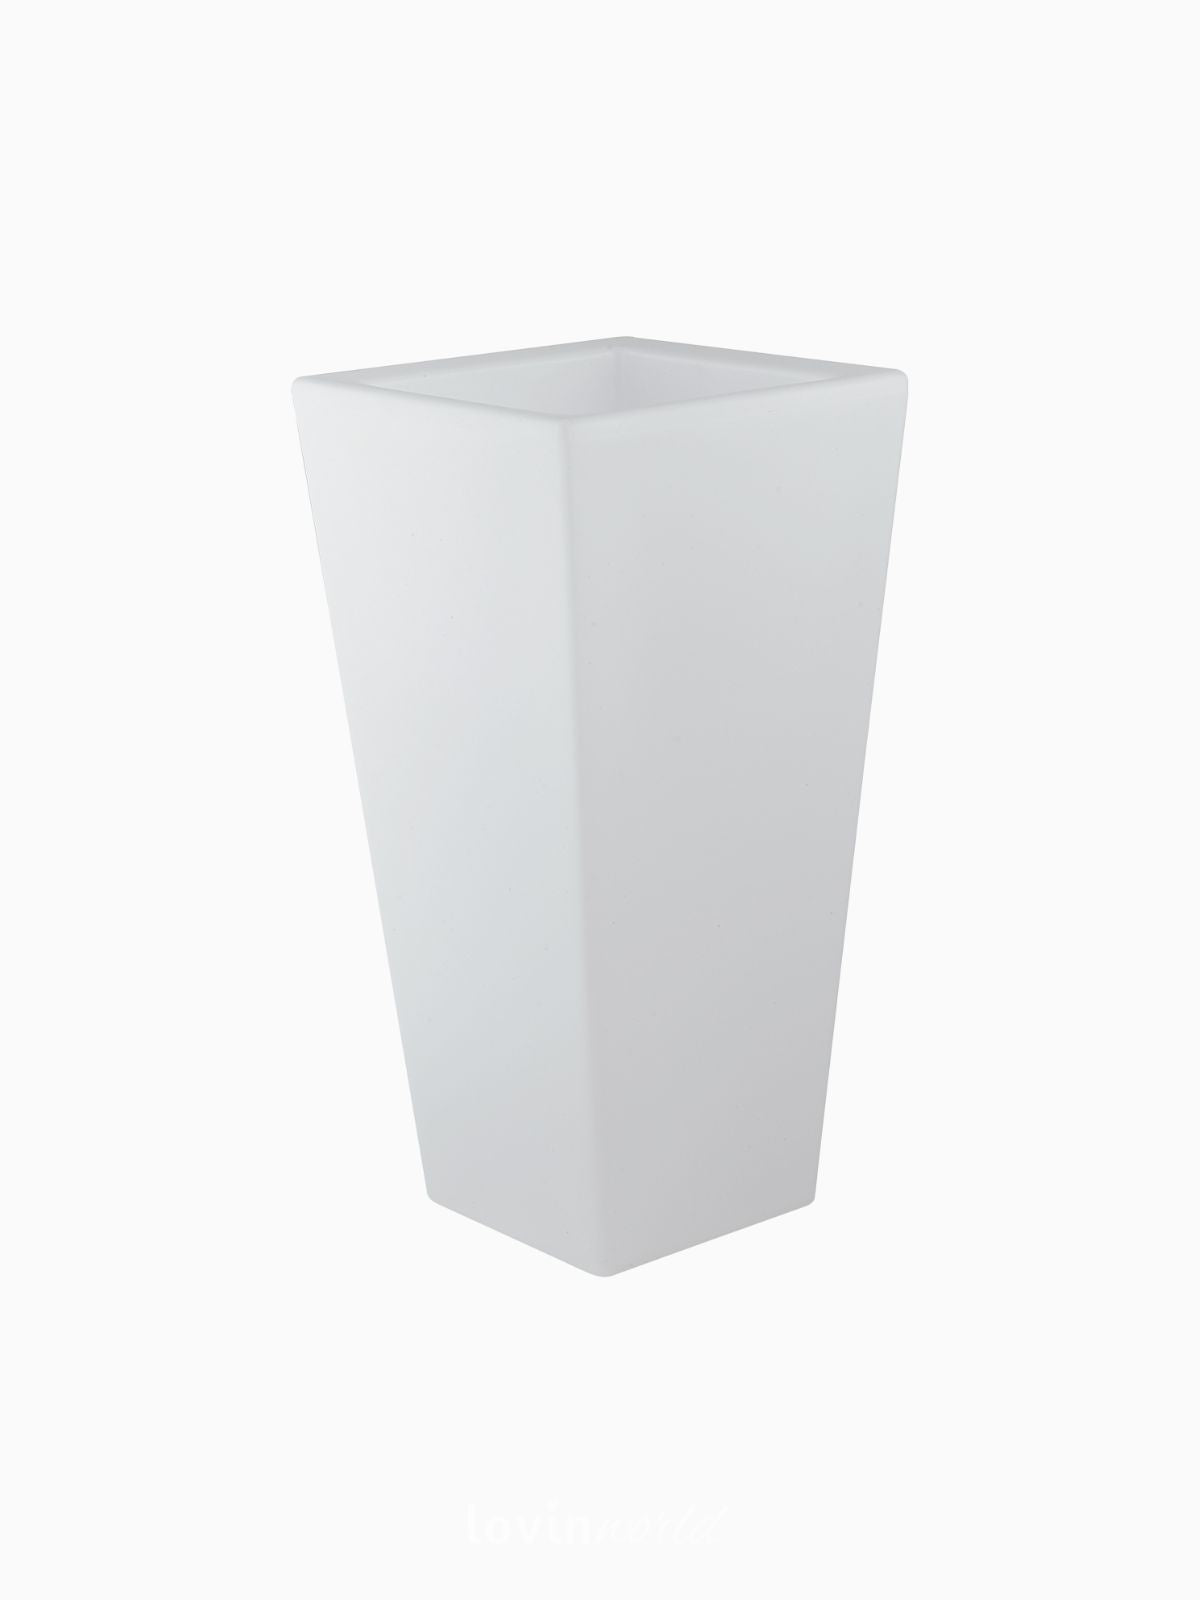 Vaso da esterno quadrato a LED Geco in polietilene, colore bianco 90 cm.-1